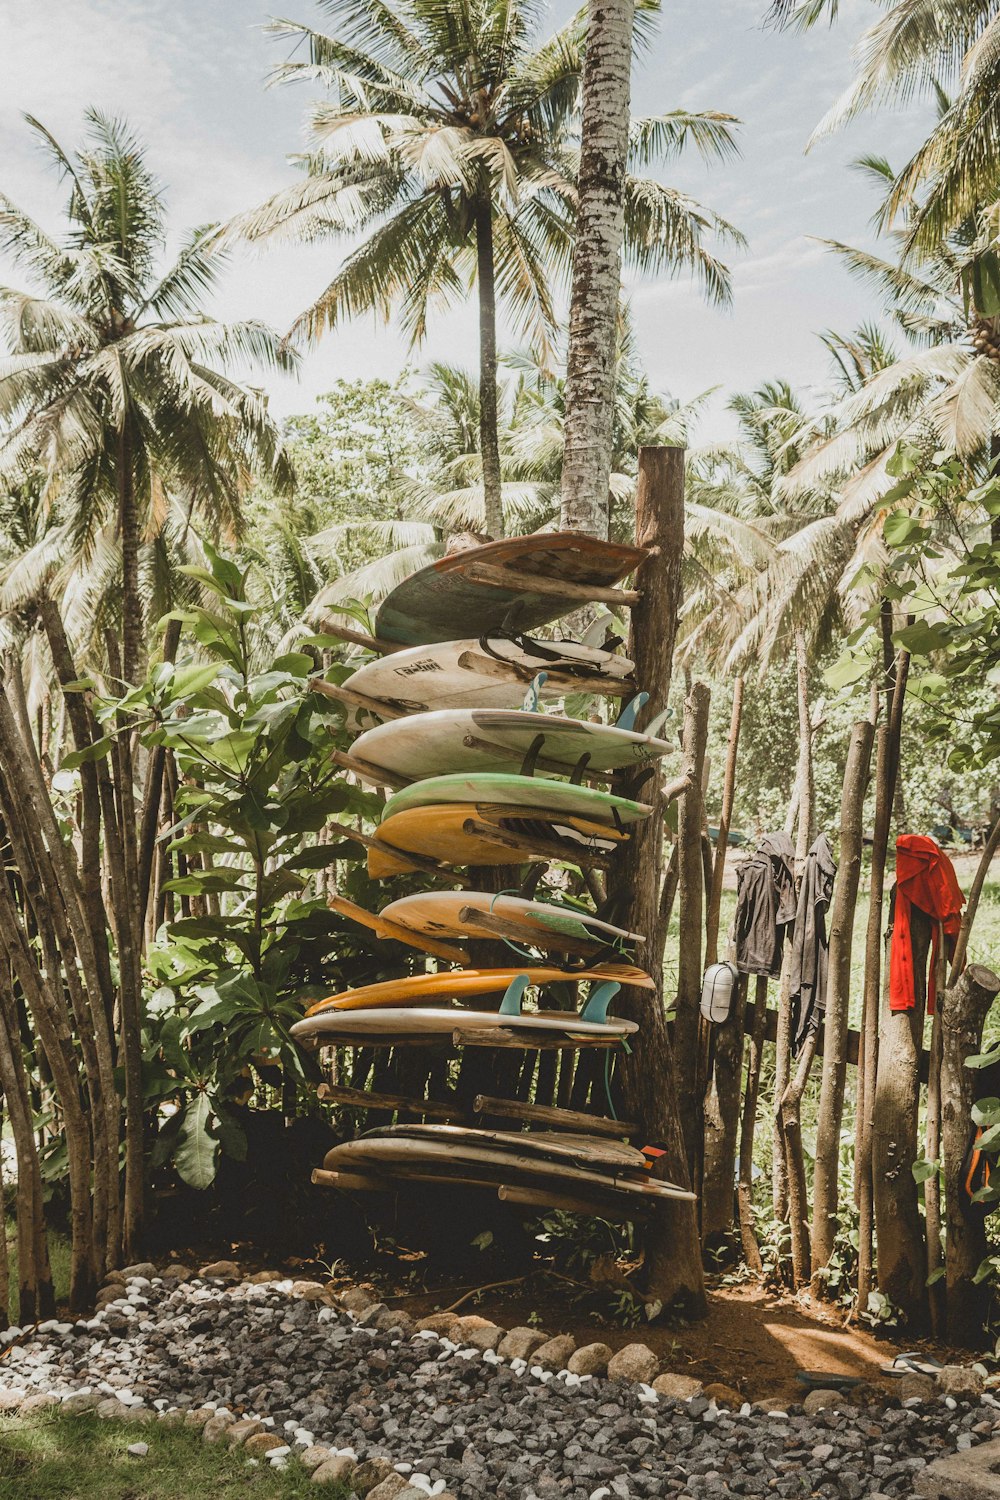 Tablas de surf en rack